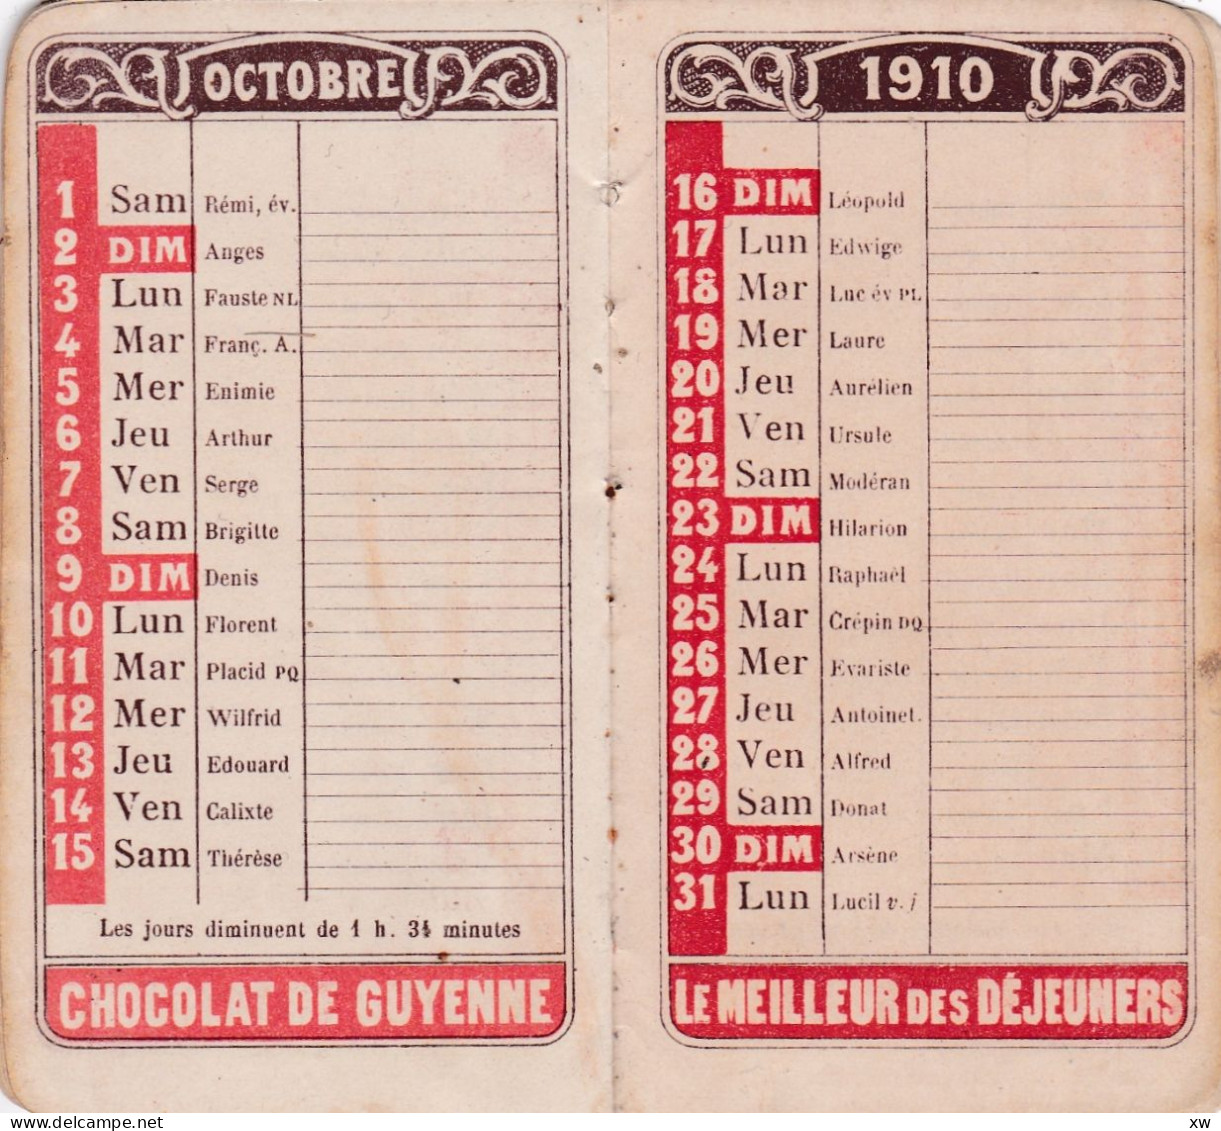 AGENDA MEMENTO 1910 offert aux acheteurs du Chocolat de Guyenne -En vente chez les Pharmaciens A. ROUDEL et Cie-19-05-24